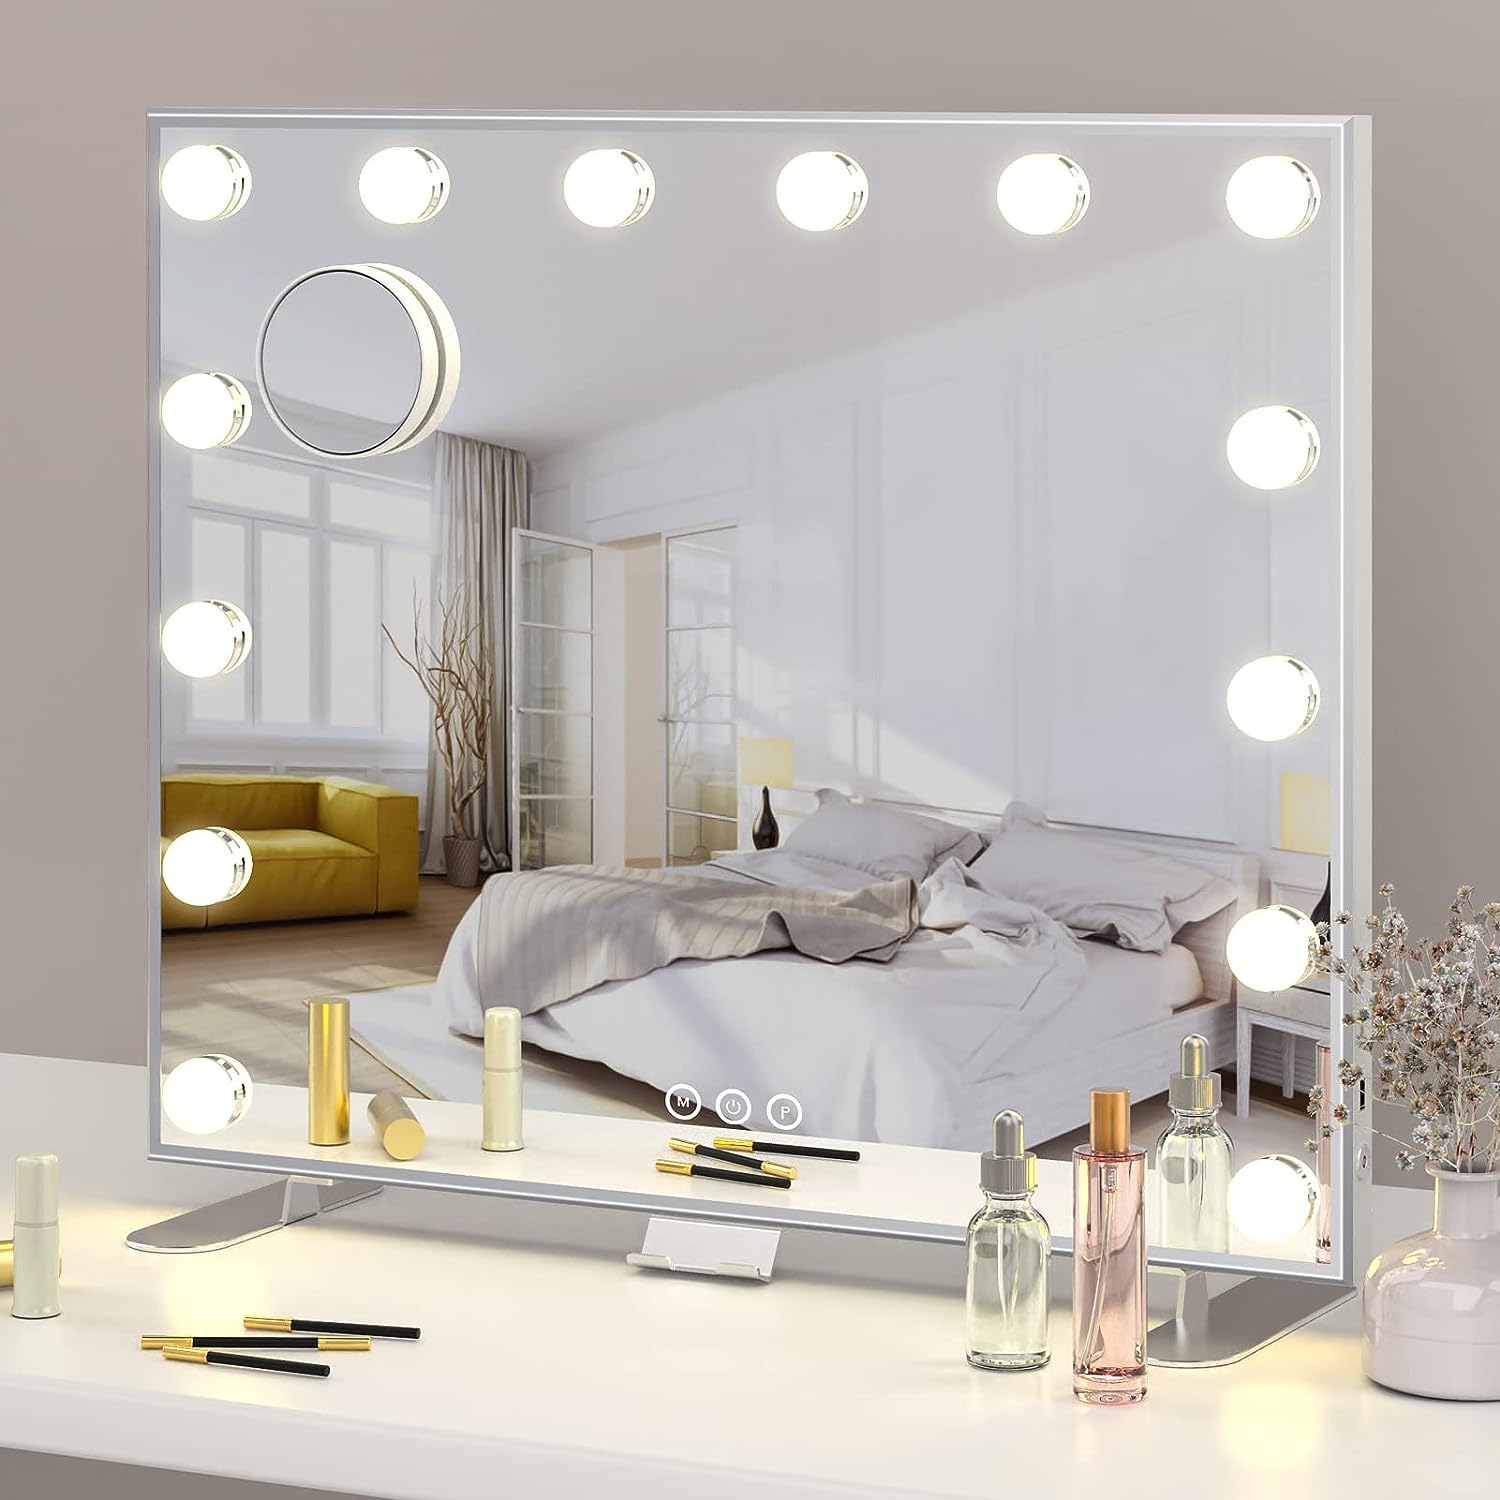 Specchio trucco con luci: come sceglierlo per non sbagliare il make up?